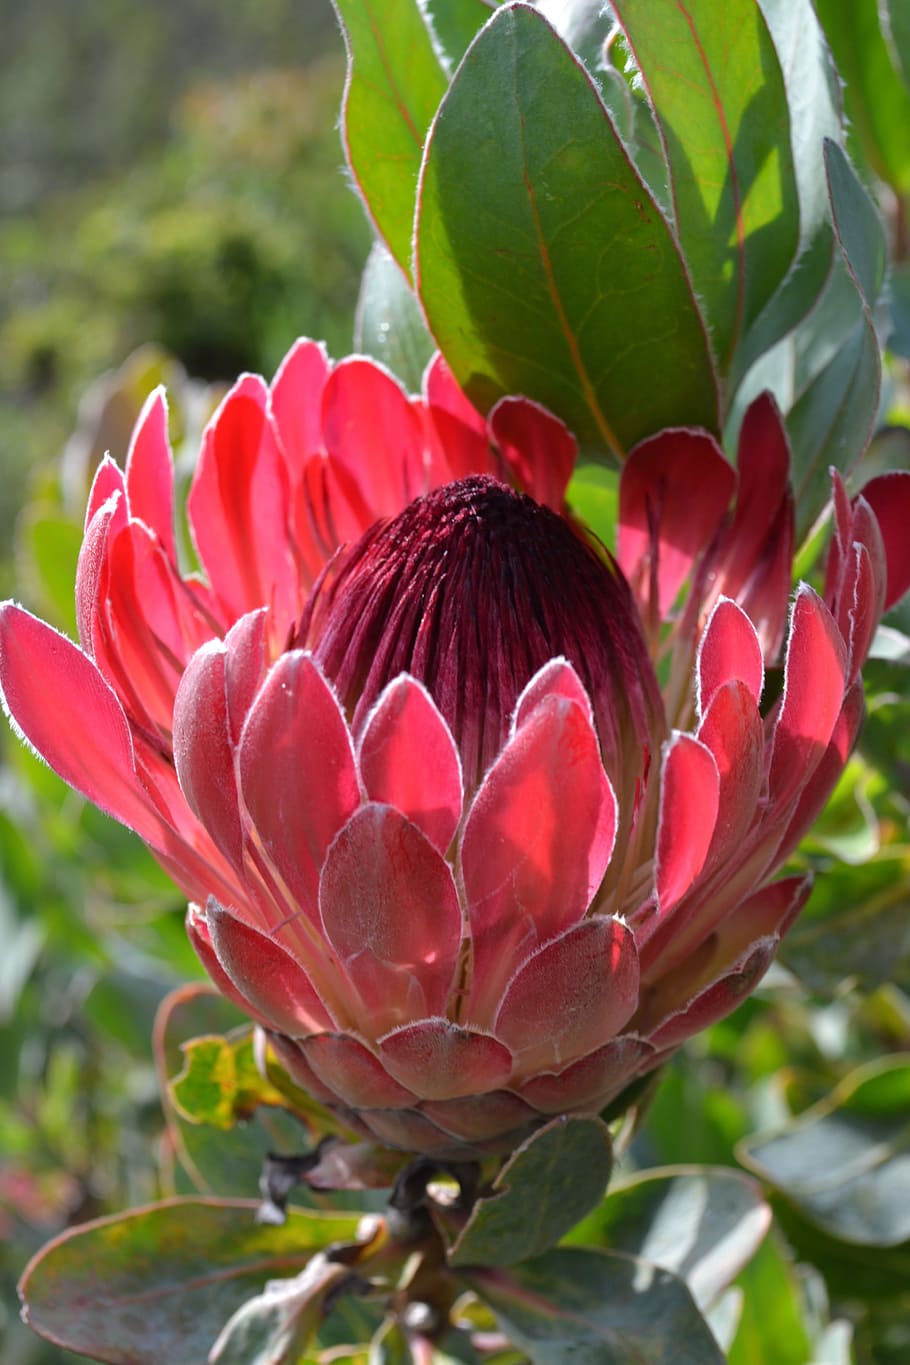 Afrika Selatan, Kebun Raya Kota Botani, Bunga, Dekat, Protea, tanaman berbunga, tanaman, daun bunga, pertumbuhan, kerapuhan